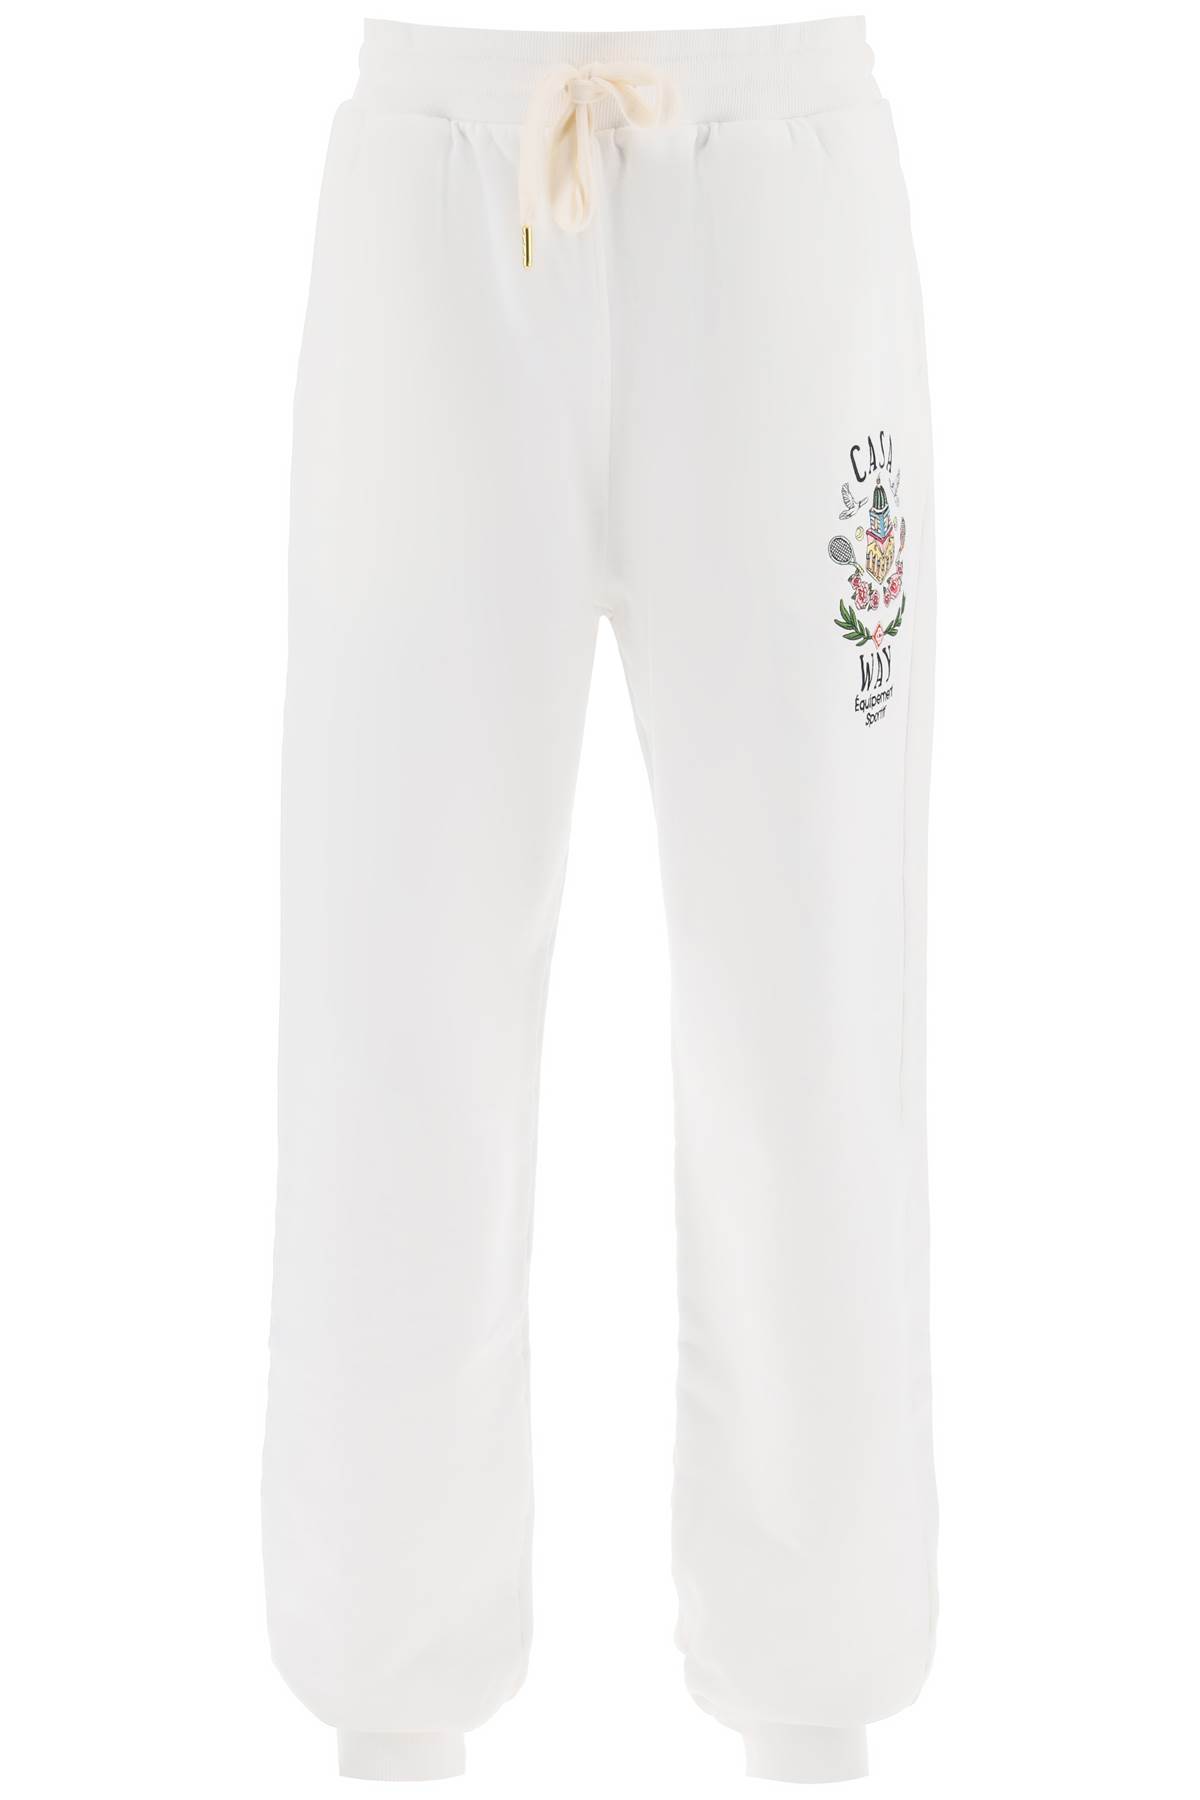 Casablanca White Cotton Pants